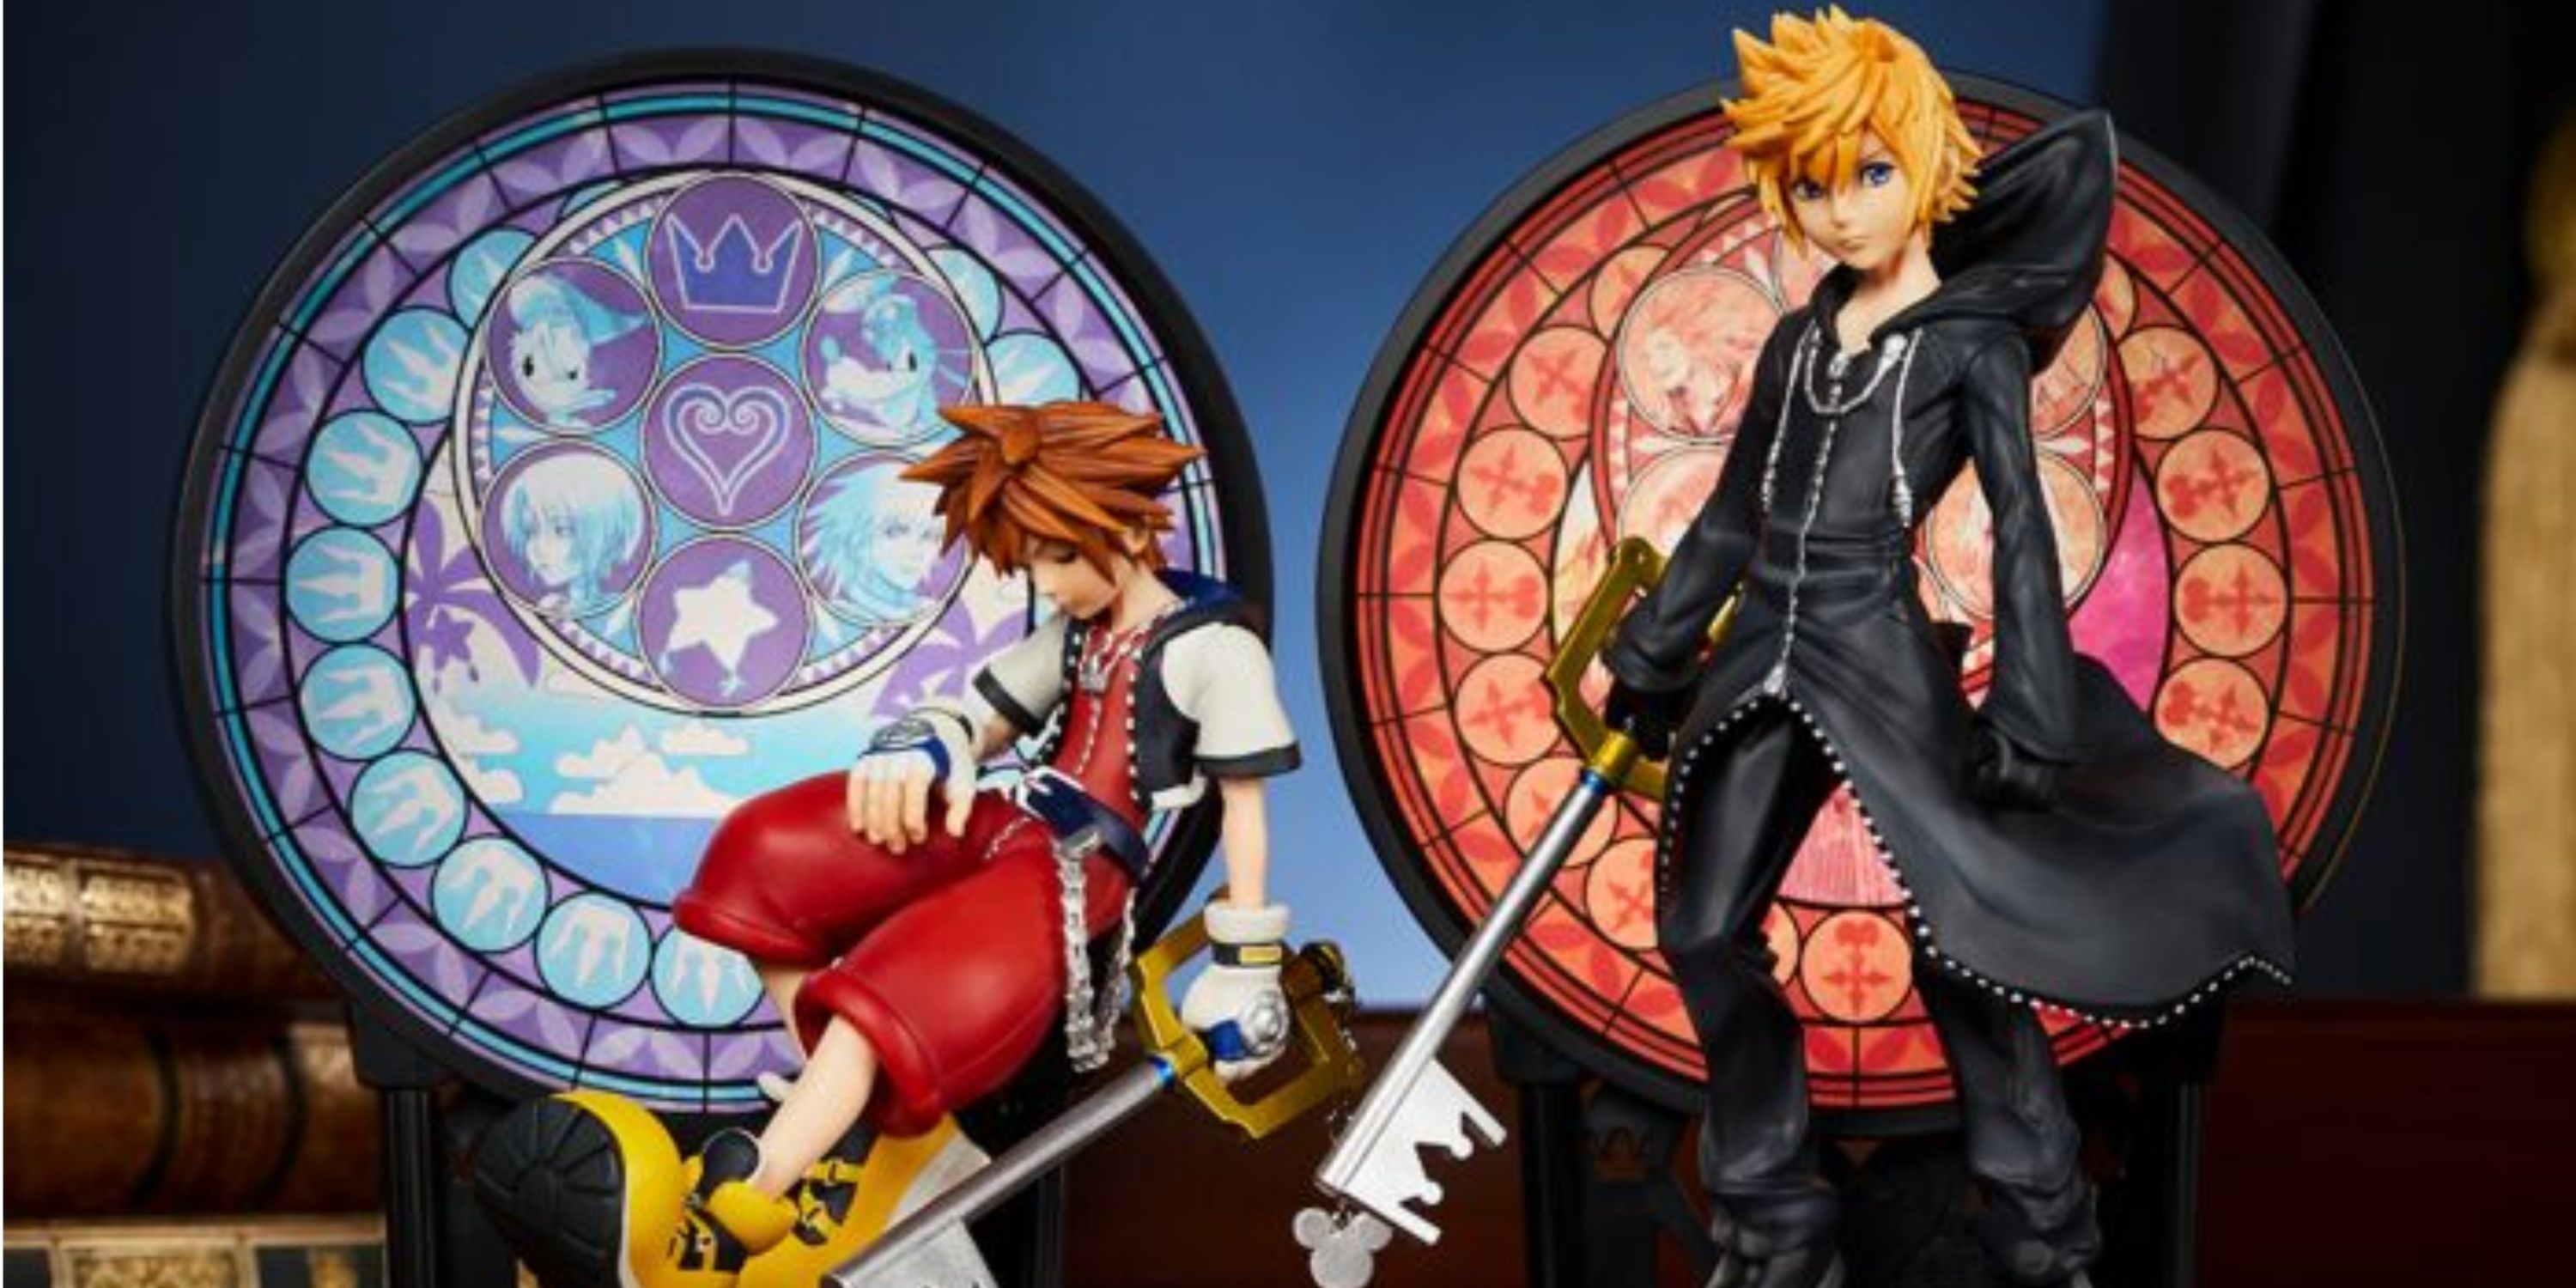 Представлены новые фигурки сердечной станции Соры и Роксаса Kingdom Hearts